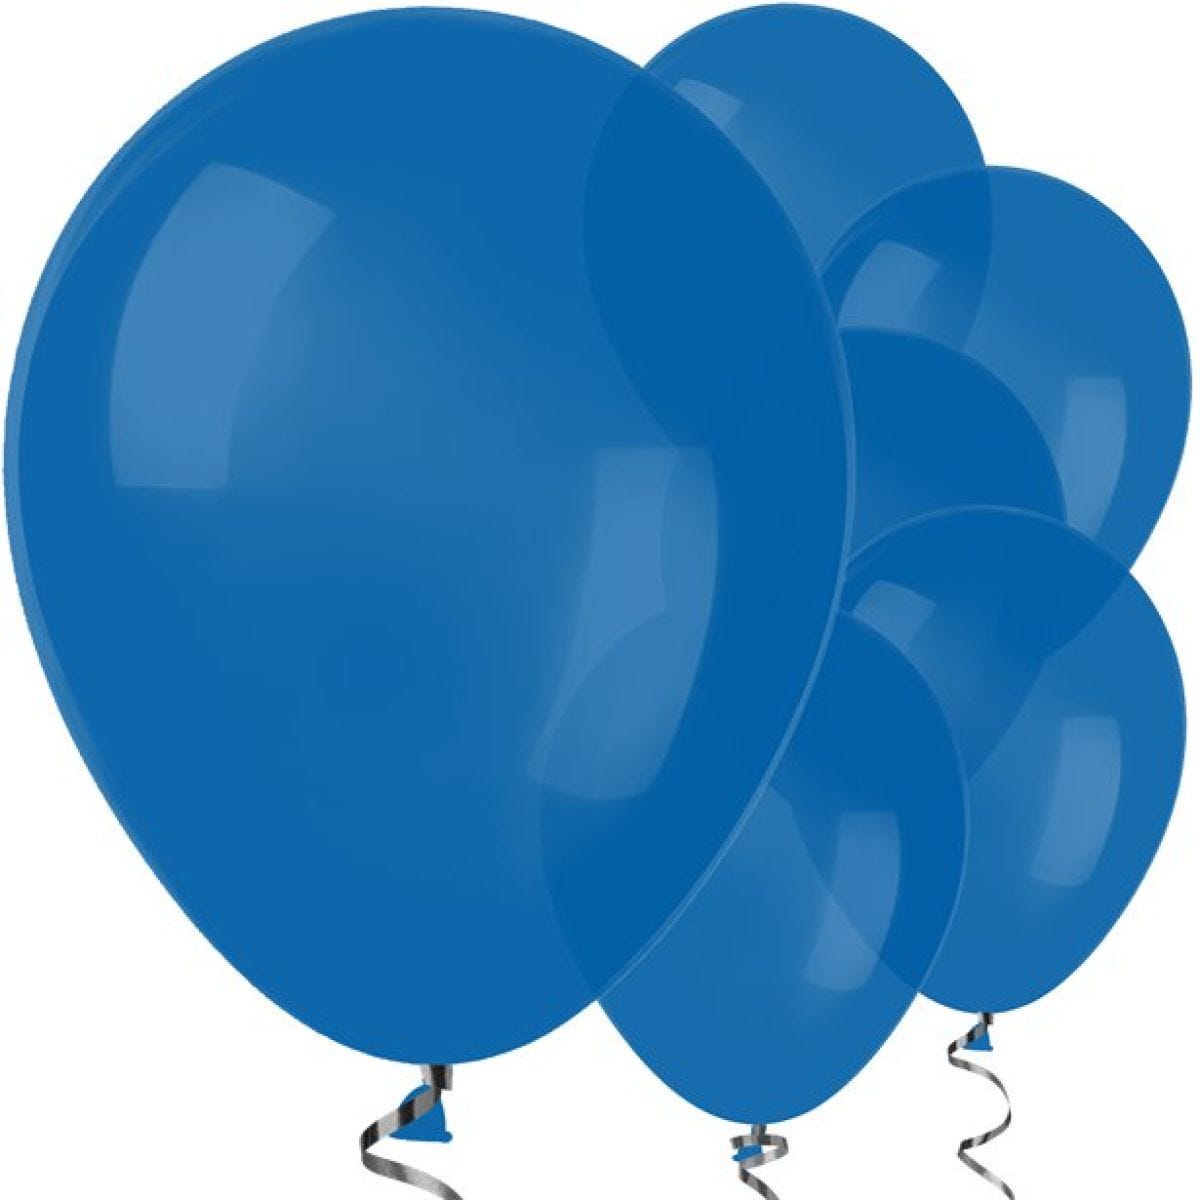 Royal Blue Balloons - 12" Latex Balloons